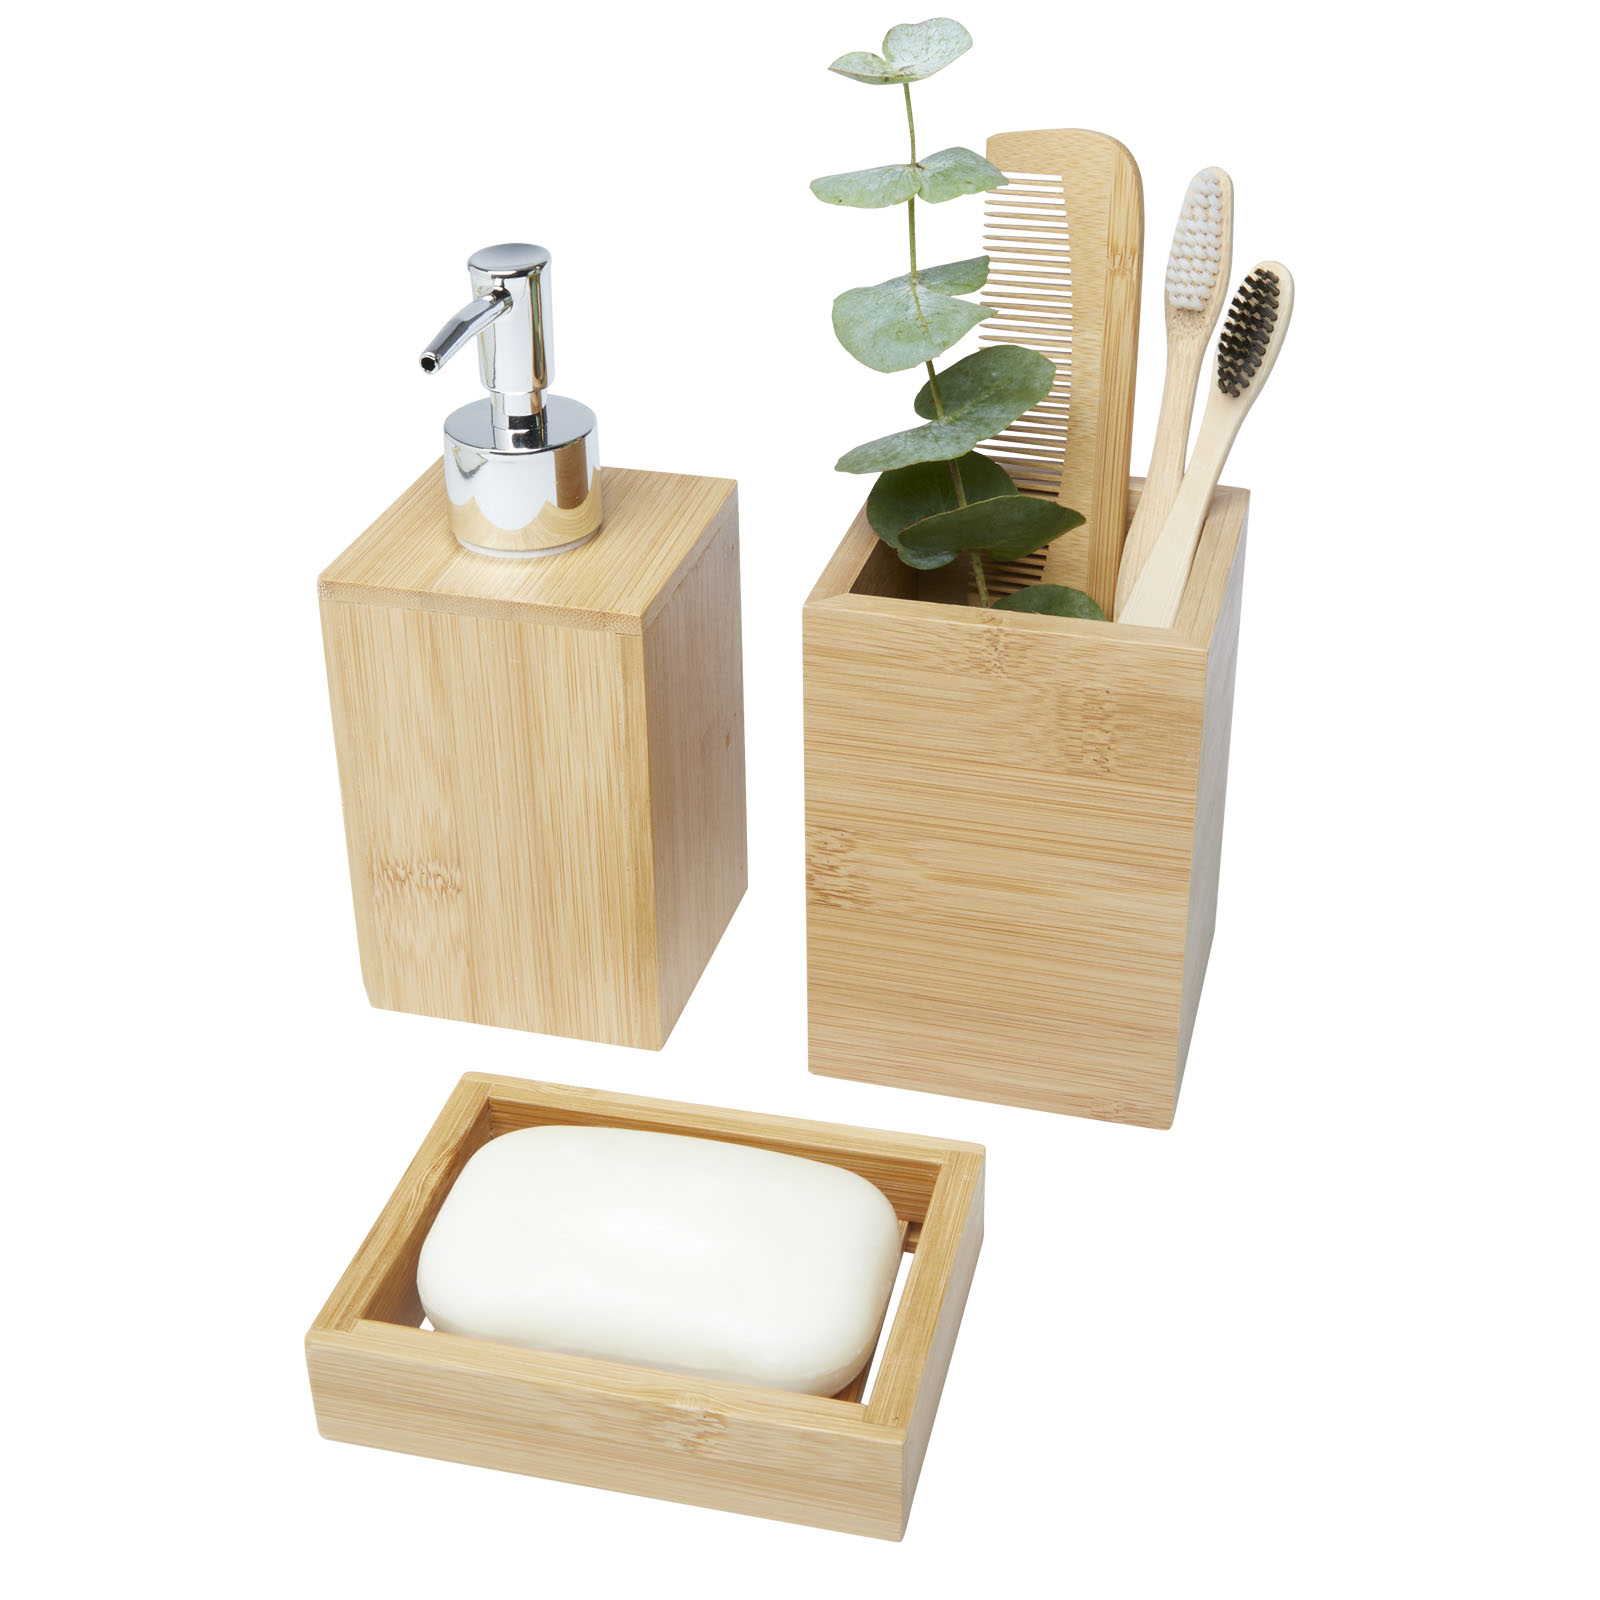 Accessoires pour la maison publicitaires - Ensemble 3 pièces pour salle de bains Hedon en bambou - 2